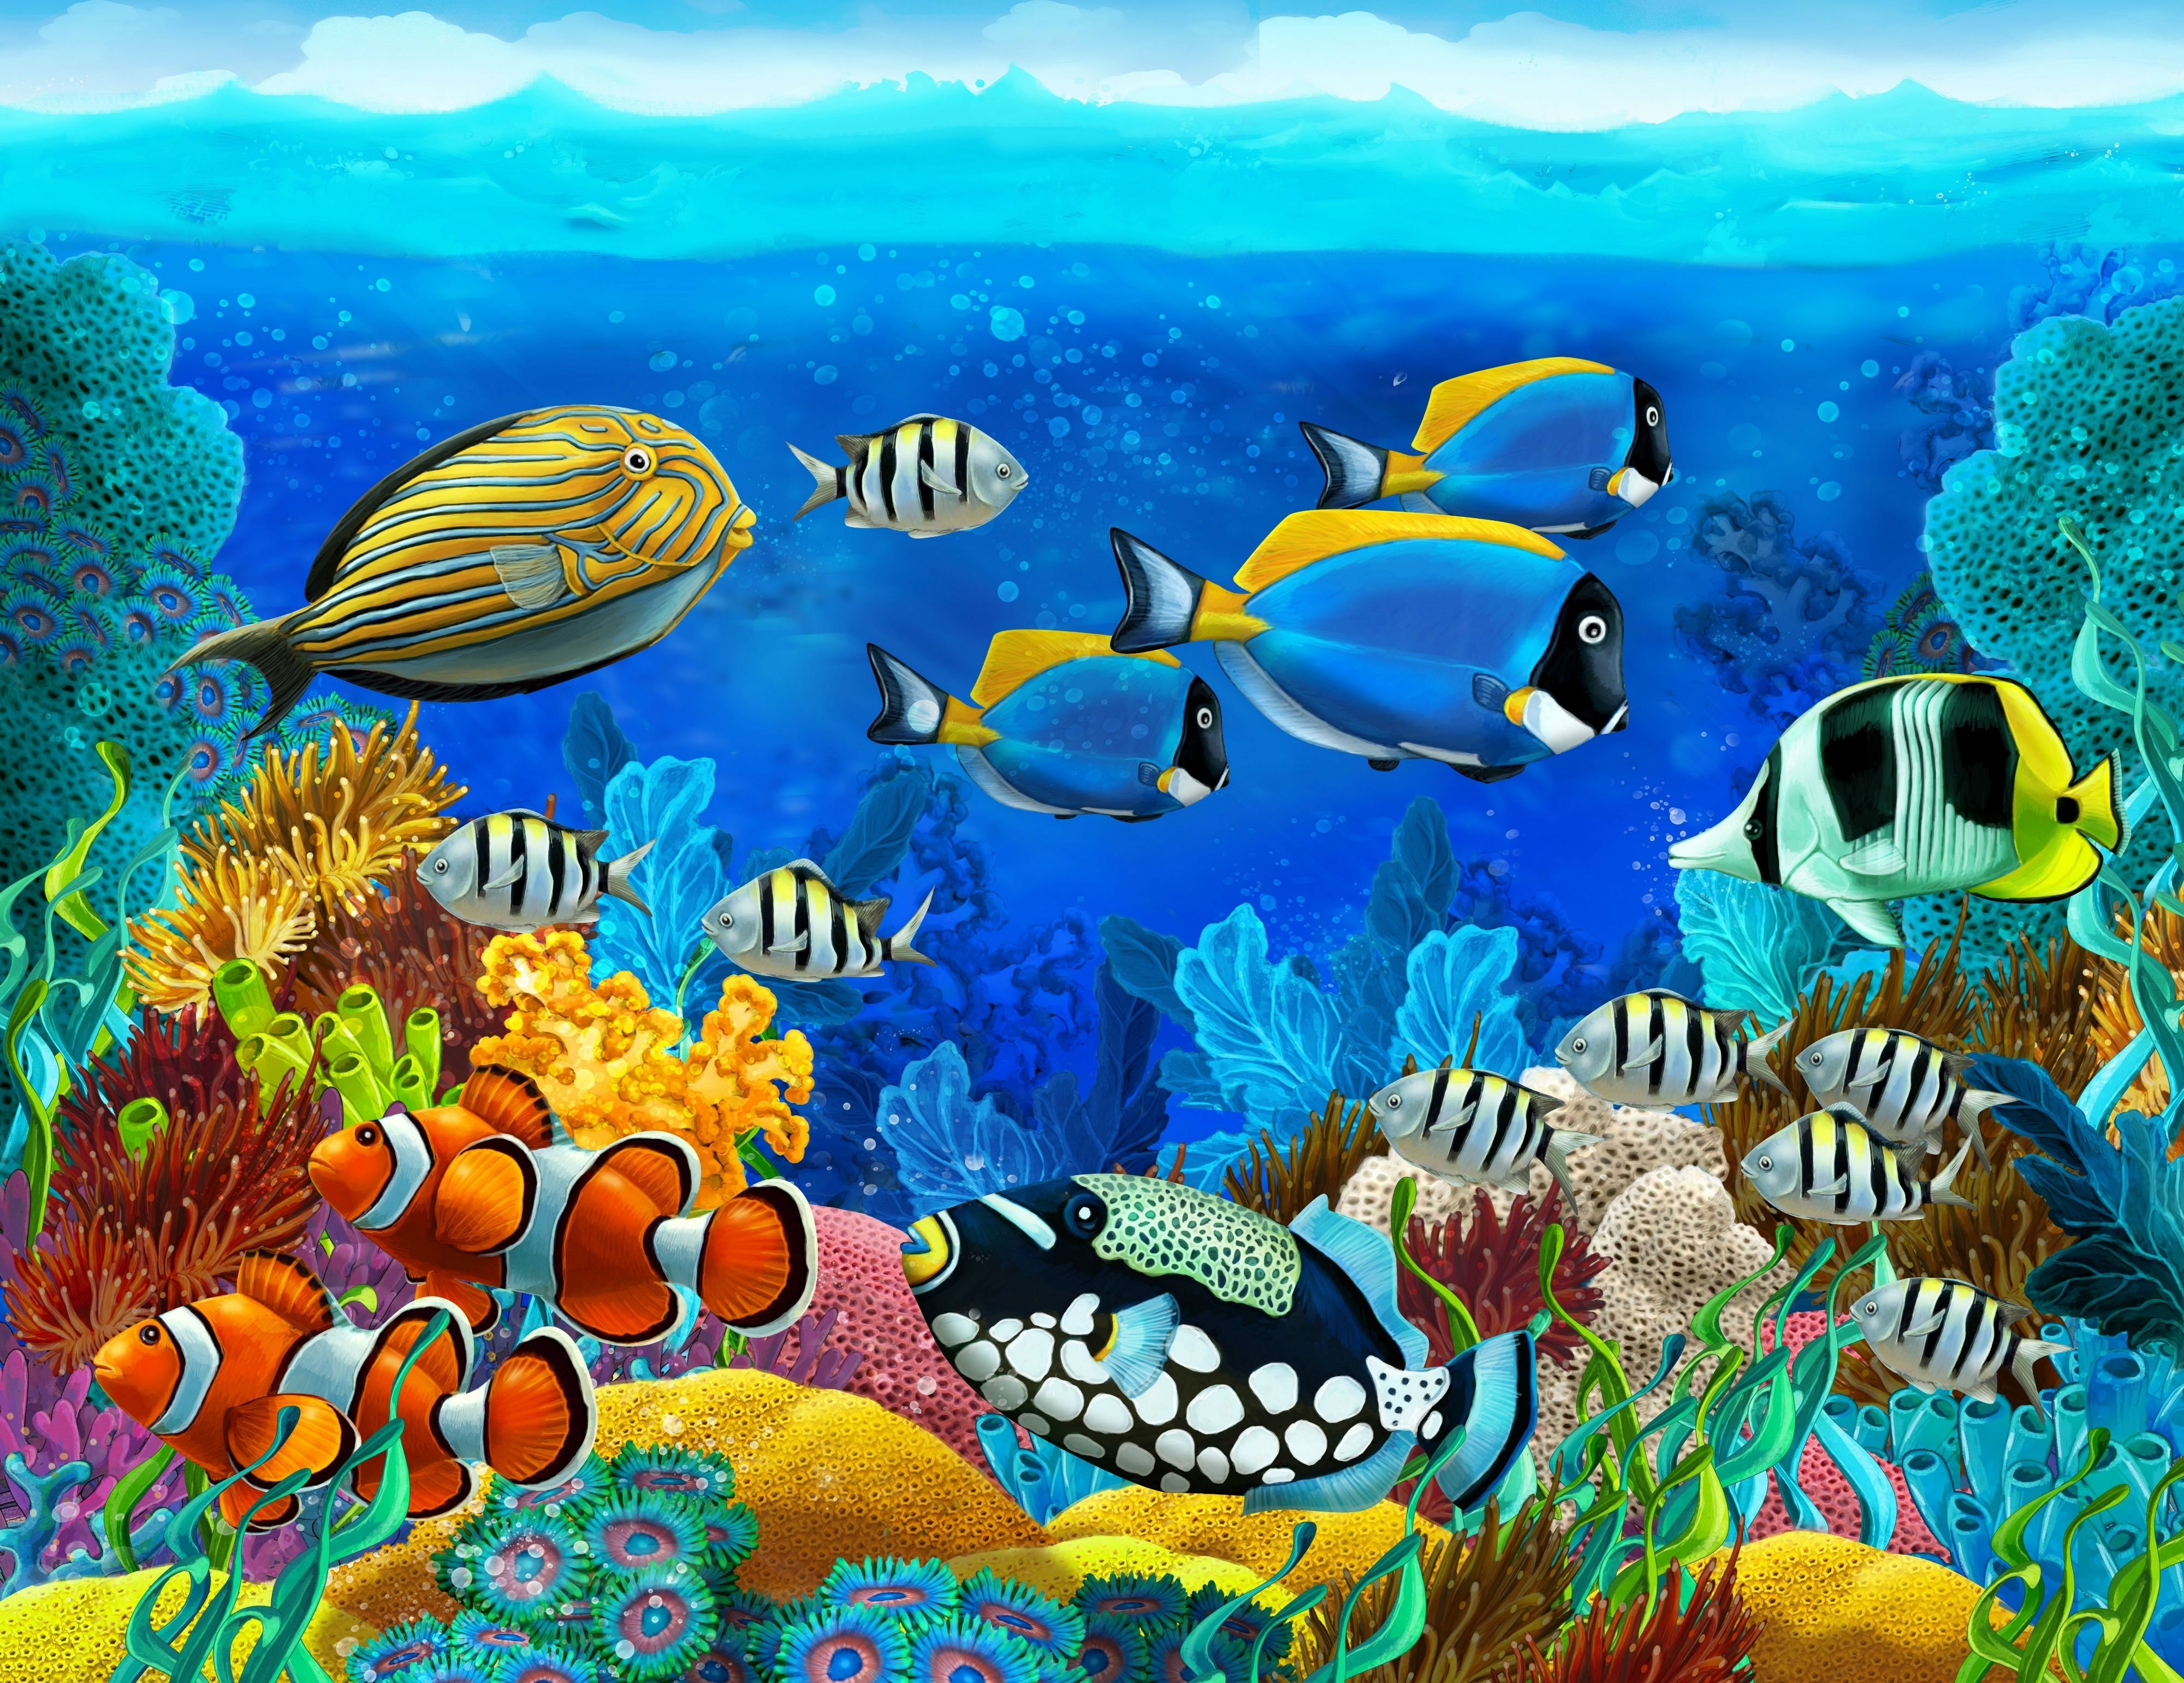 Бесплатное фото Аквариум с рыбками